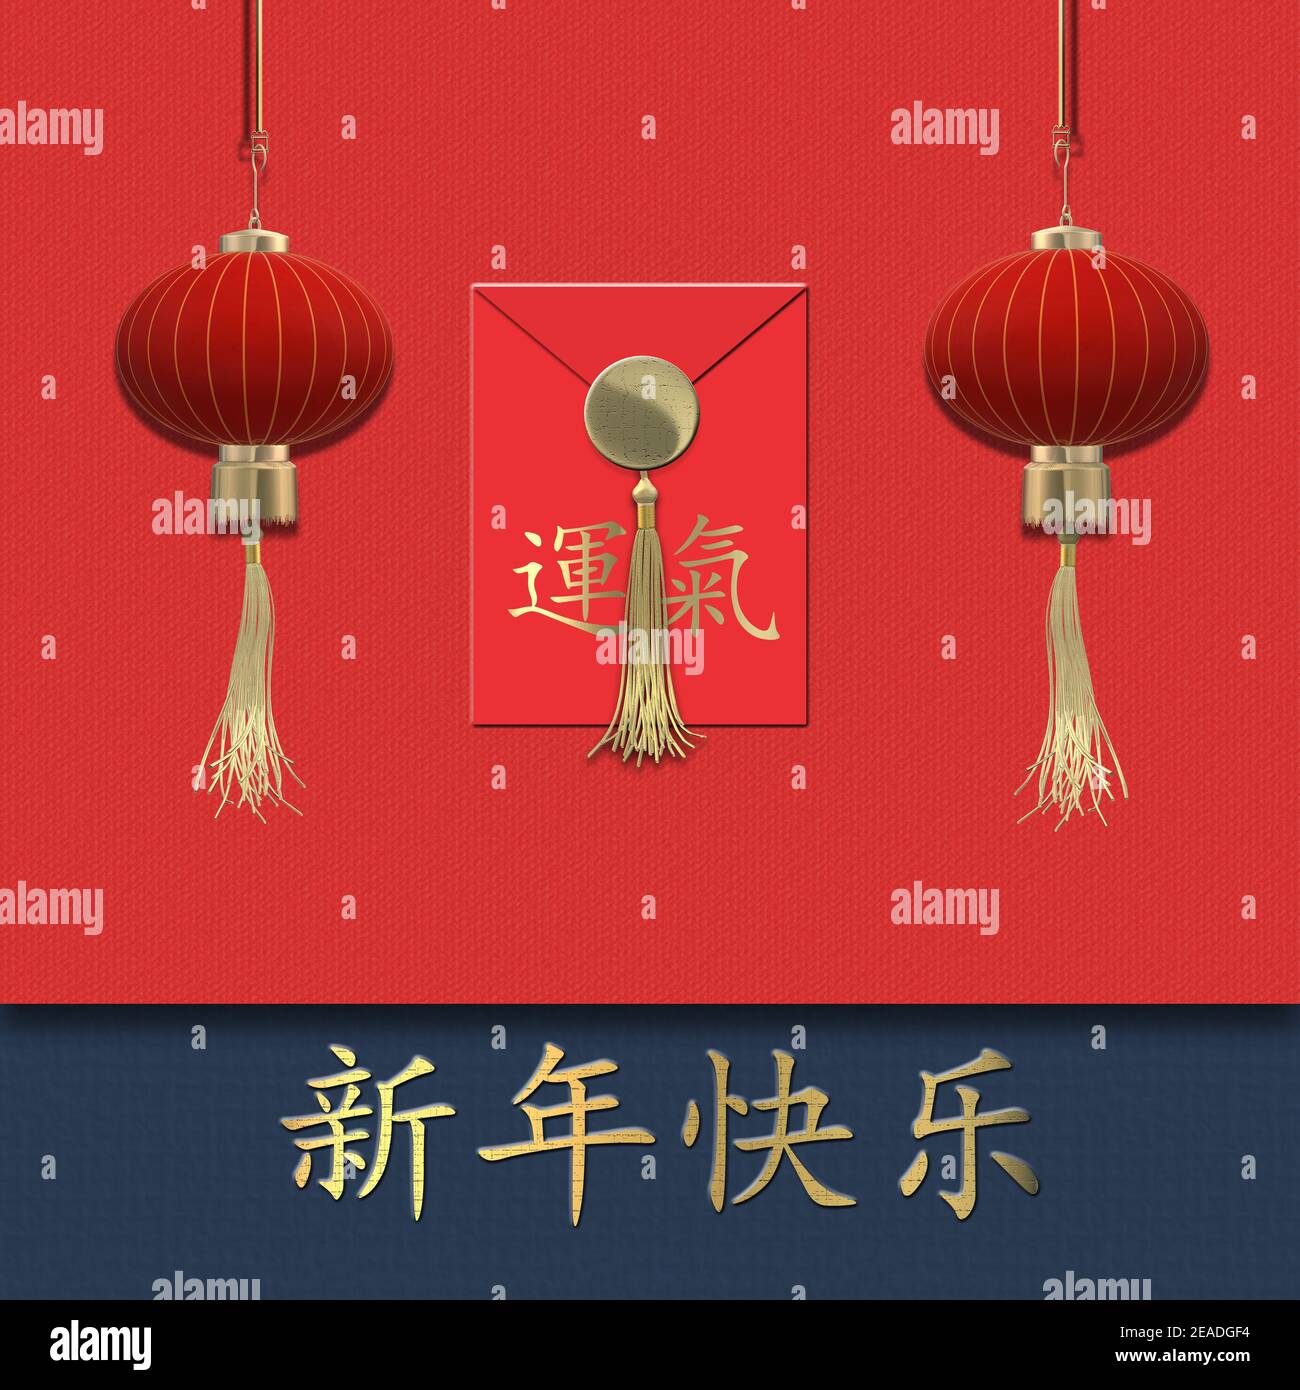 Nouvel an chinois 2021 sur rouge. Lanternes rouges réalistes. Rouge Chinois enveloppe chanceux avec texte chinois traduction chance. Traduction du texte en chinois heureux Banque D'Images